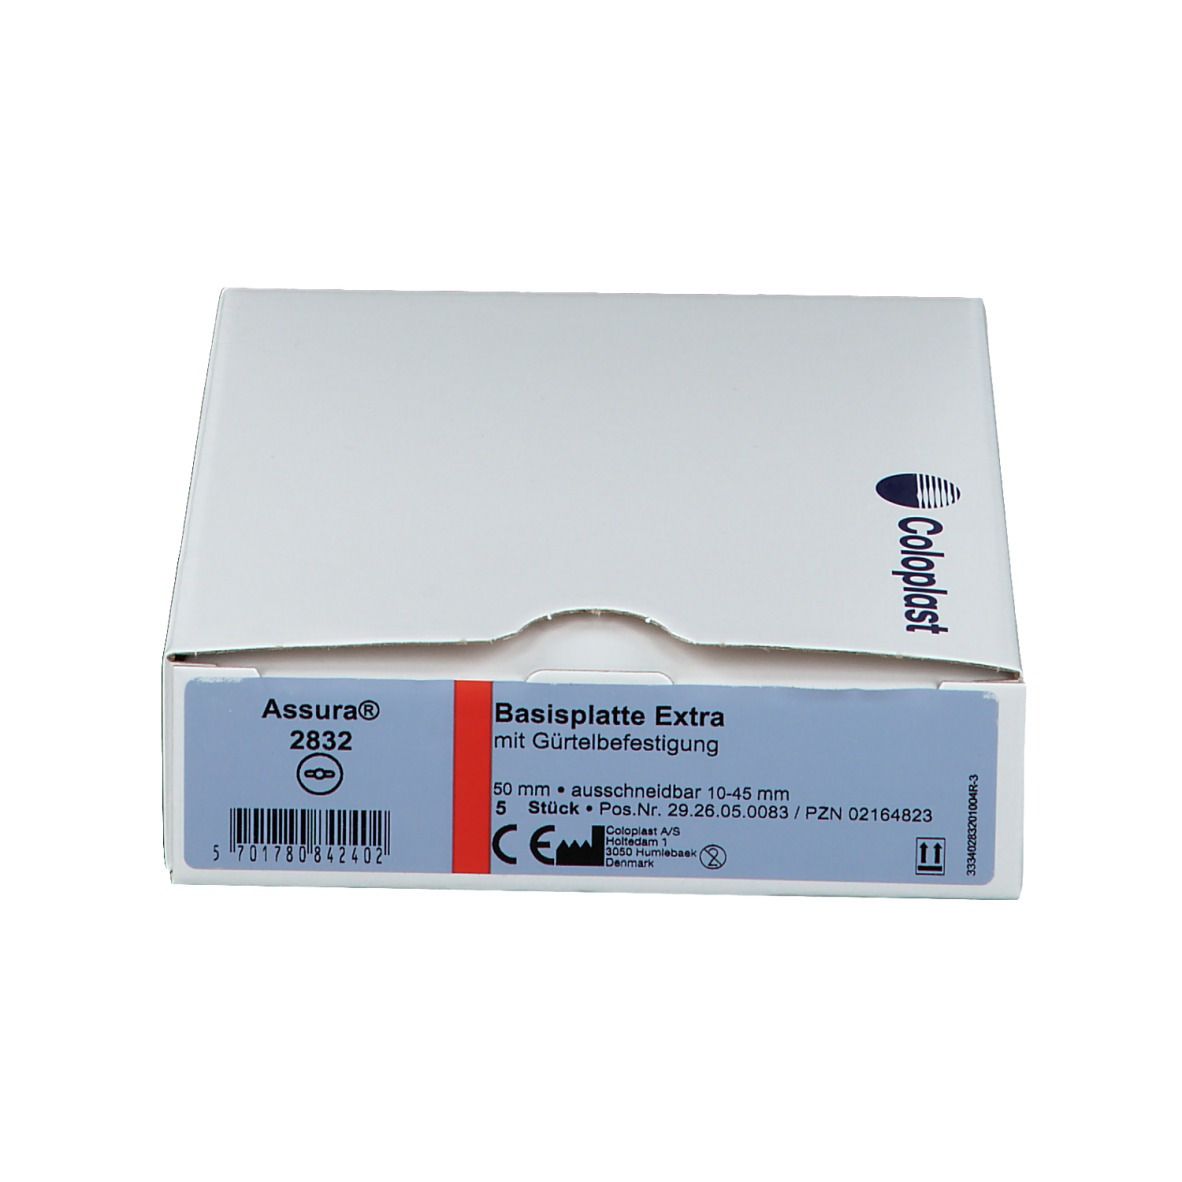 ASSURA® Basisplatten extra, 10-45mm Rastring 50mm